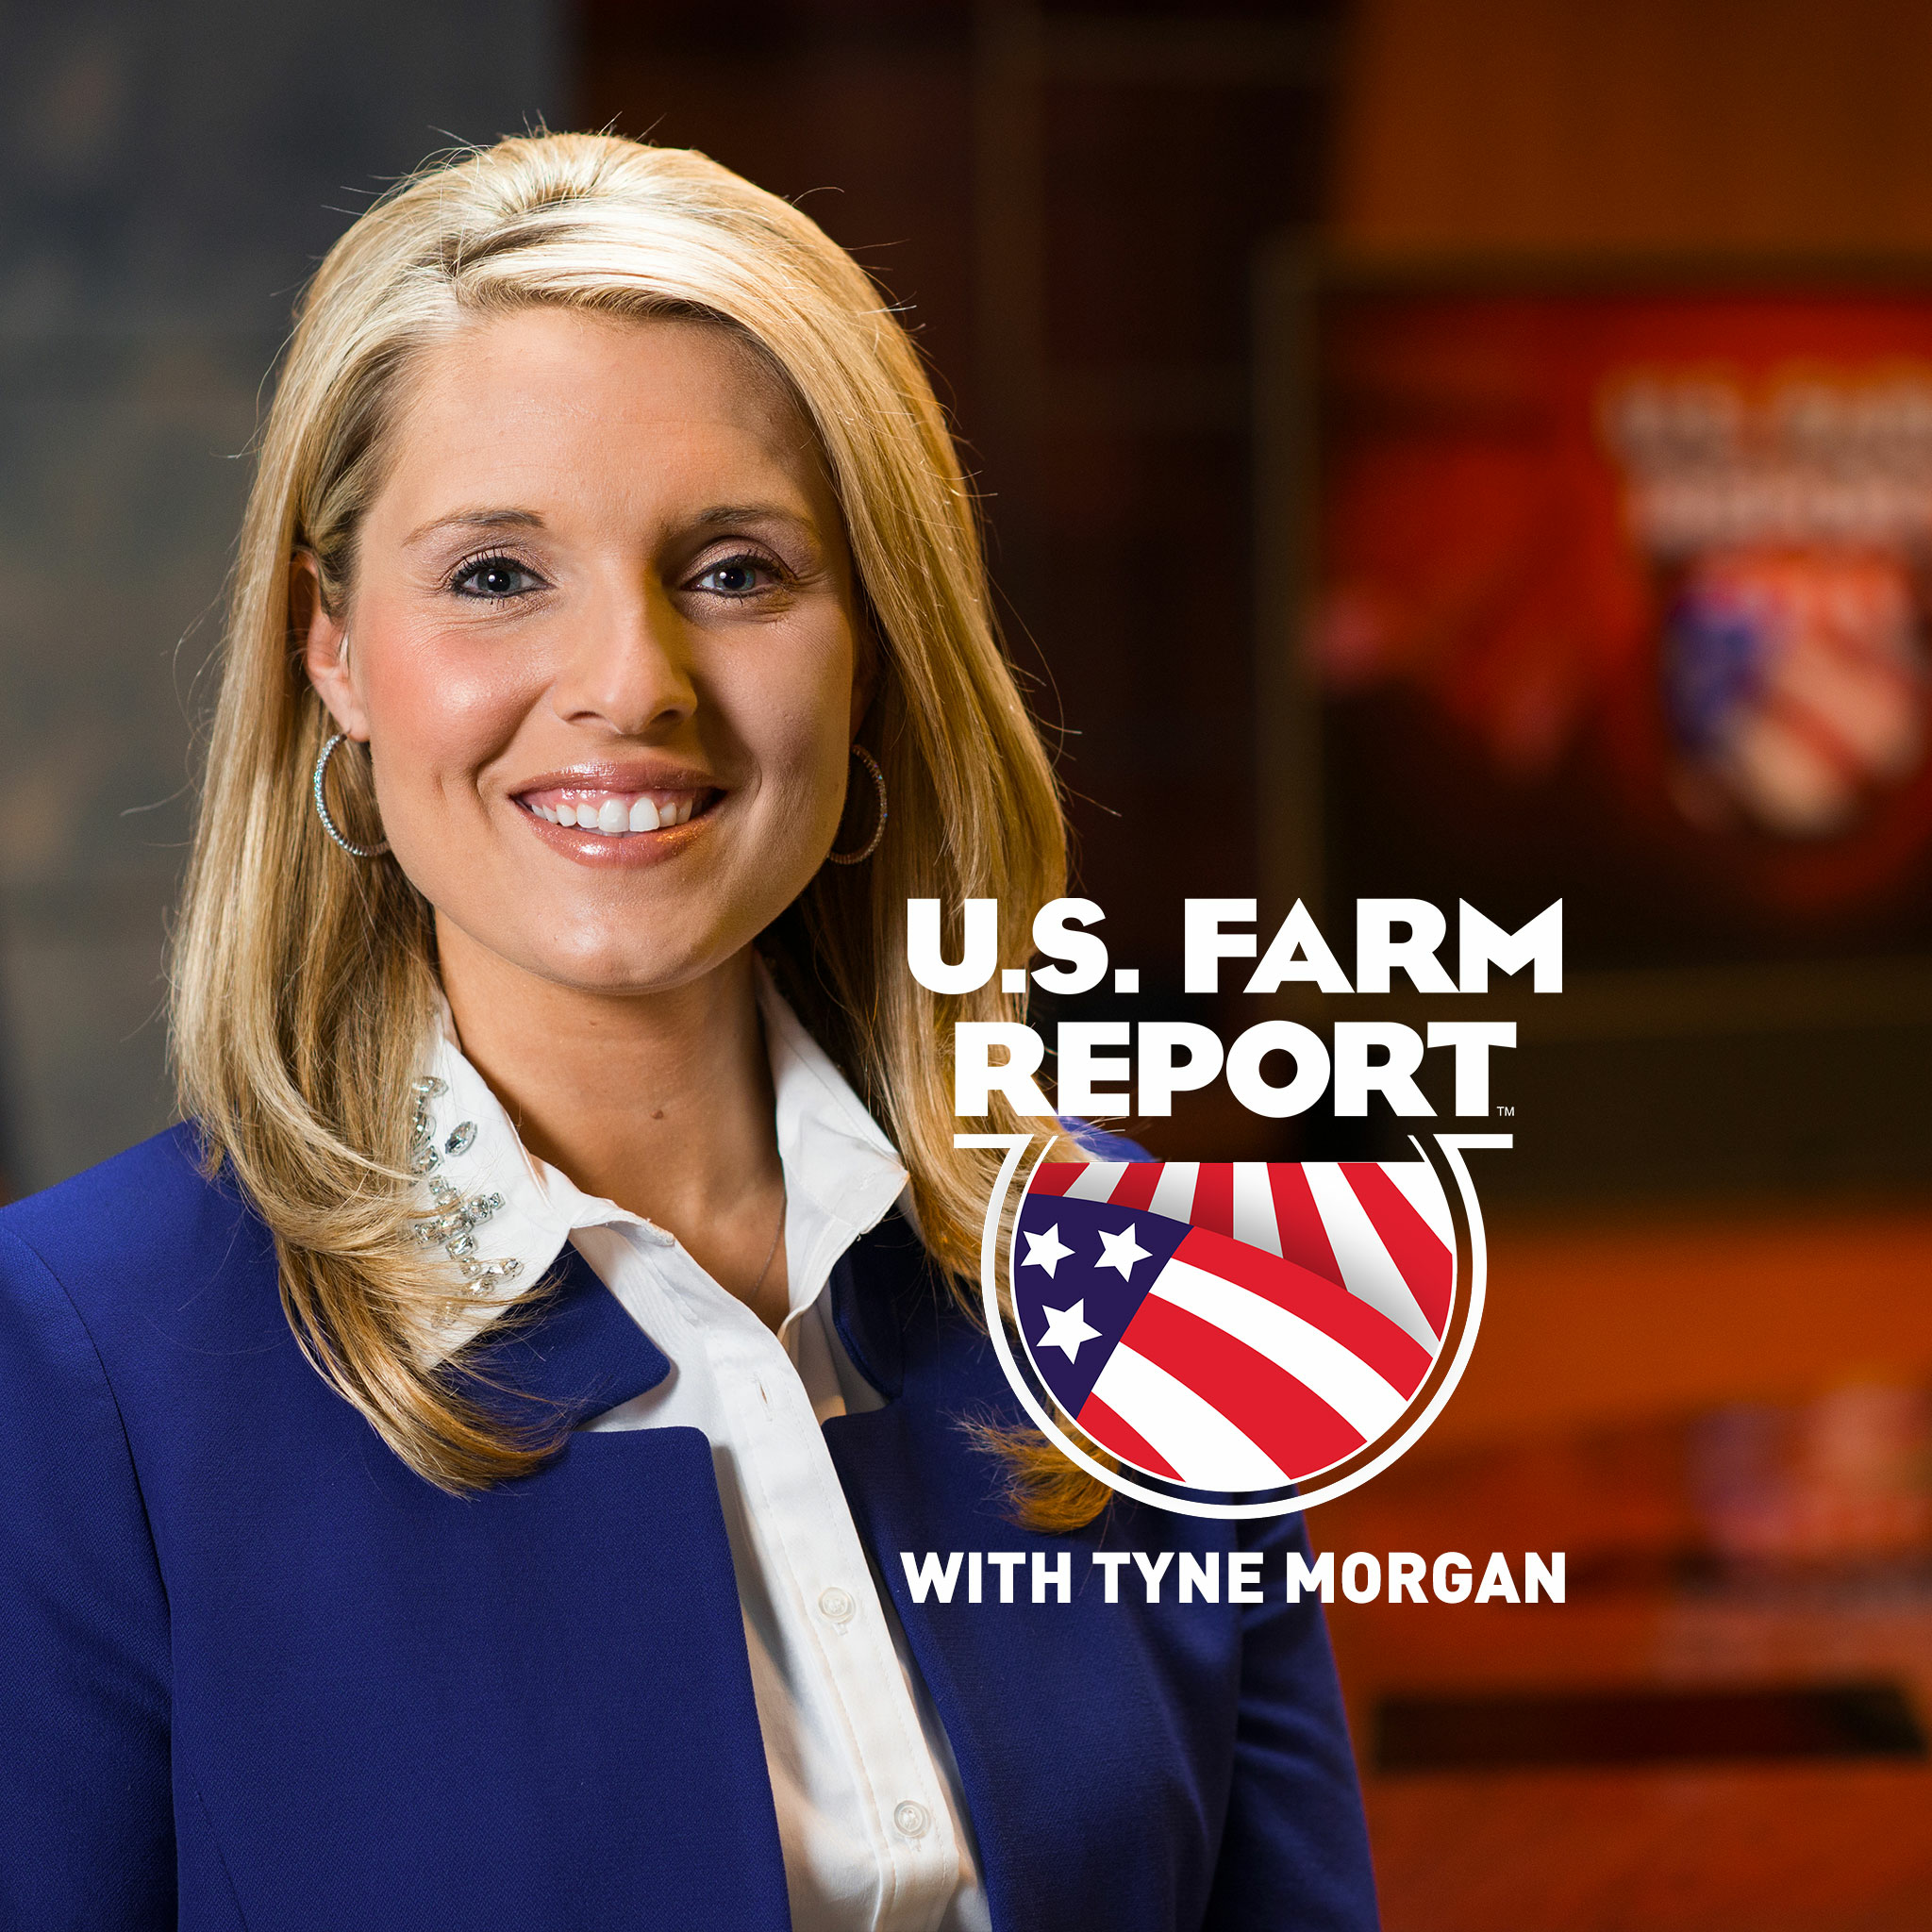 U.S. Farm Report January 16, 2021